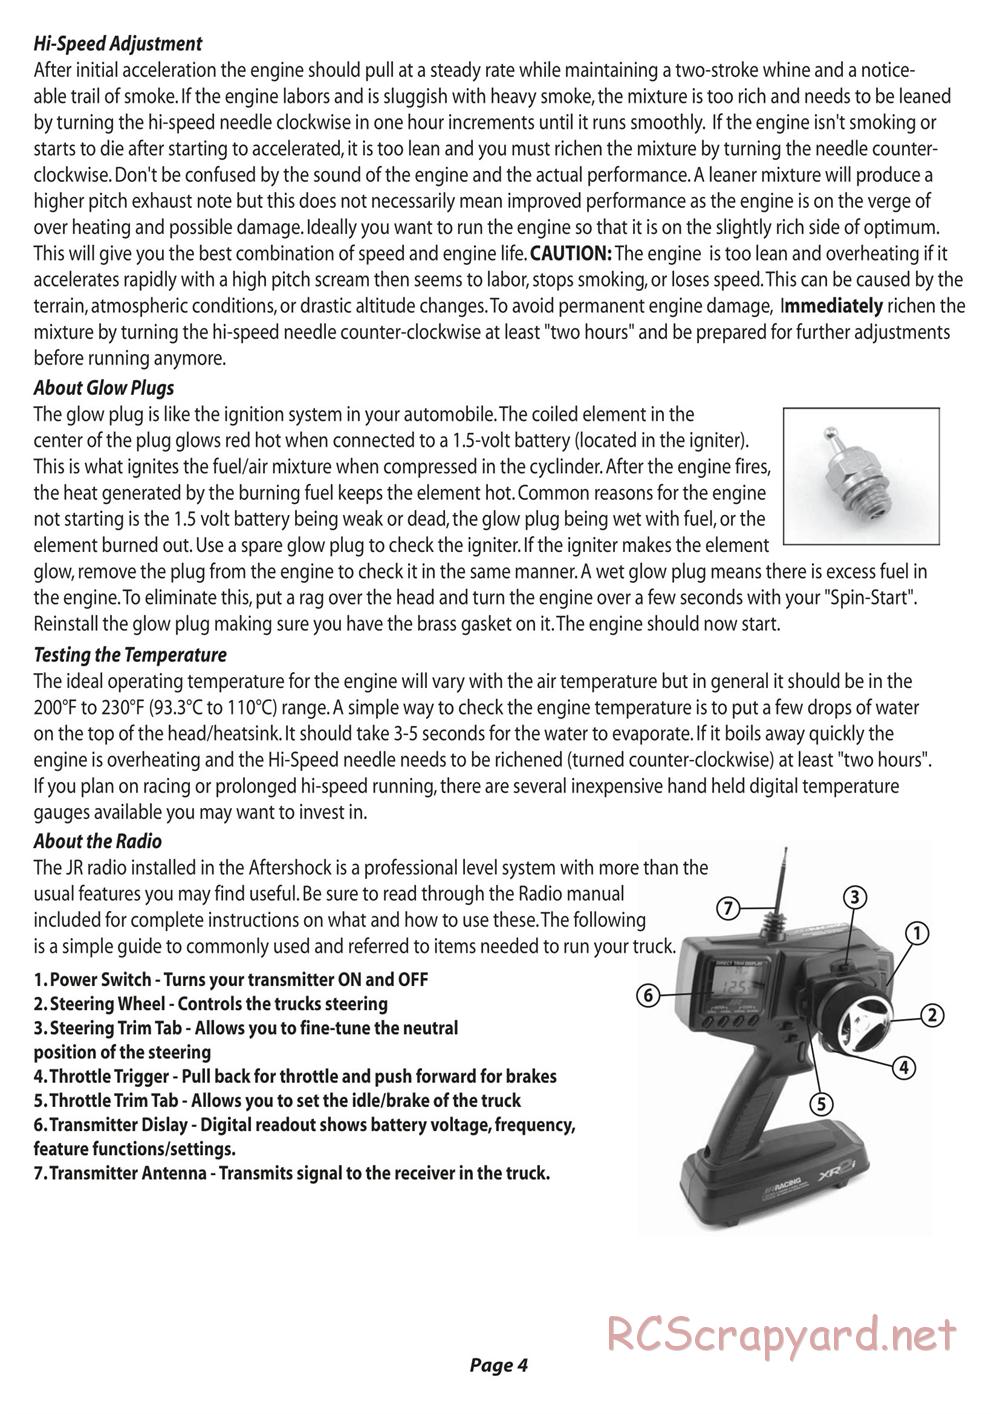 Team Losi - Aftershock - Manual - Page 5